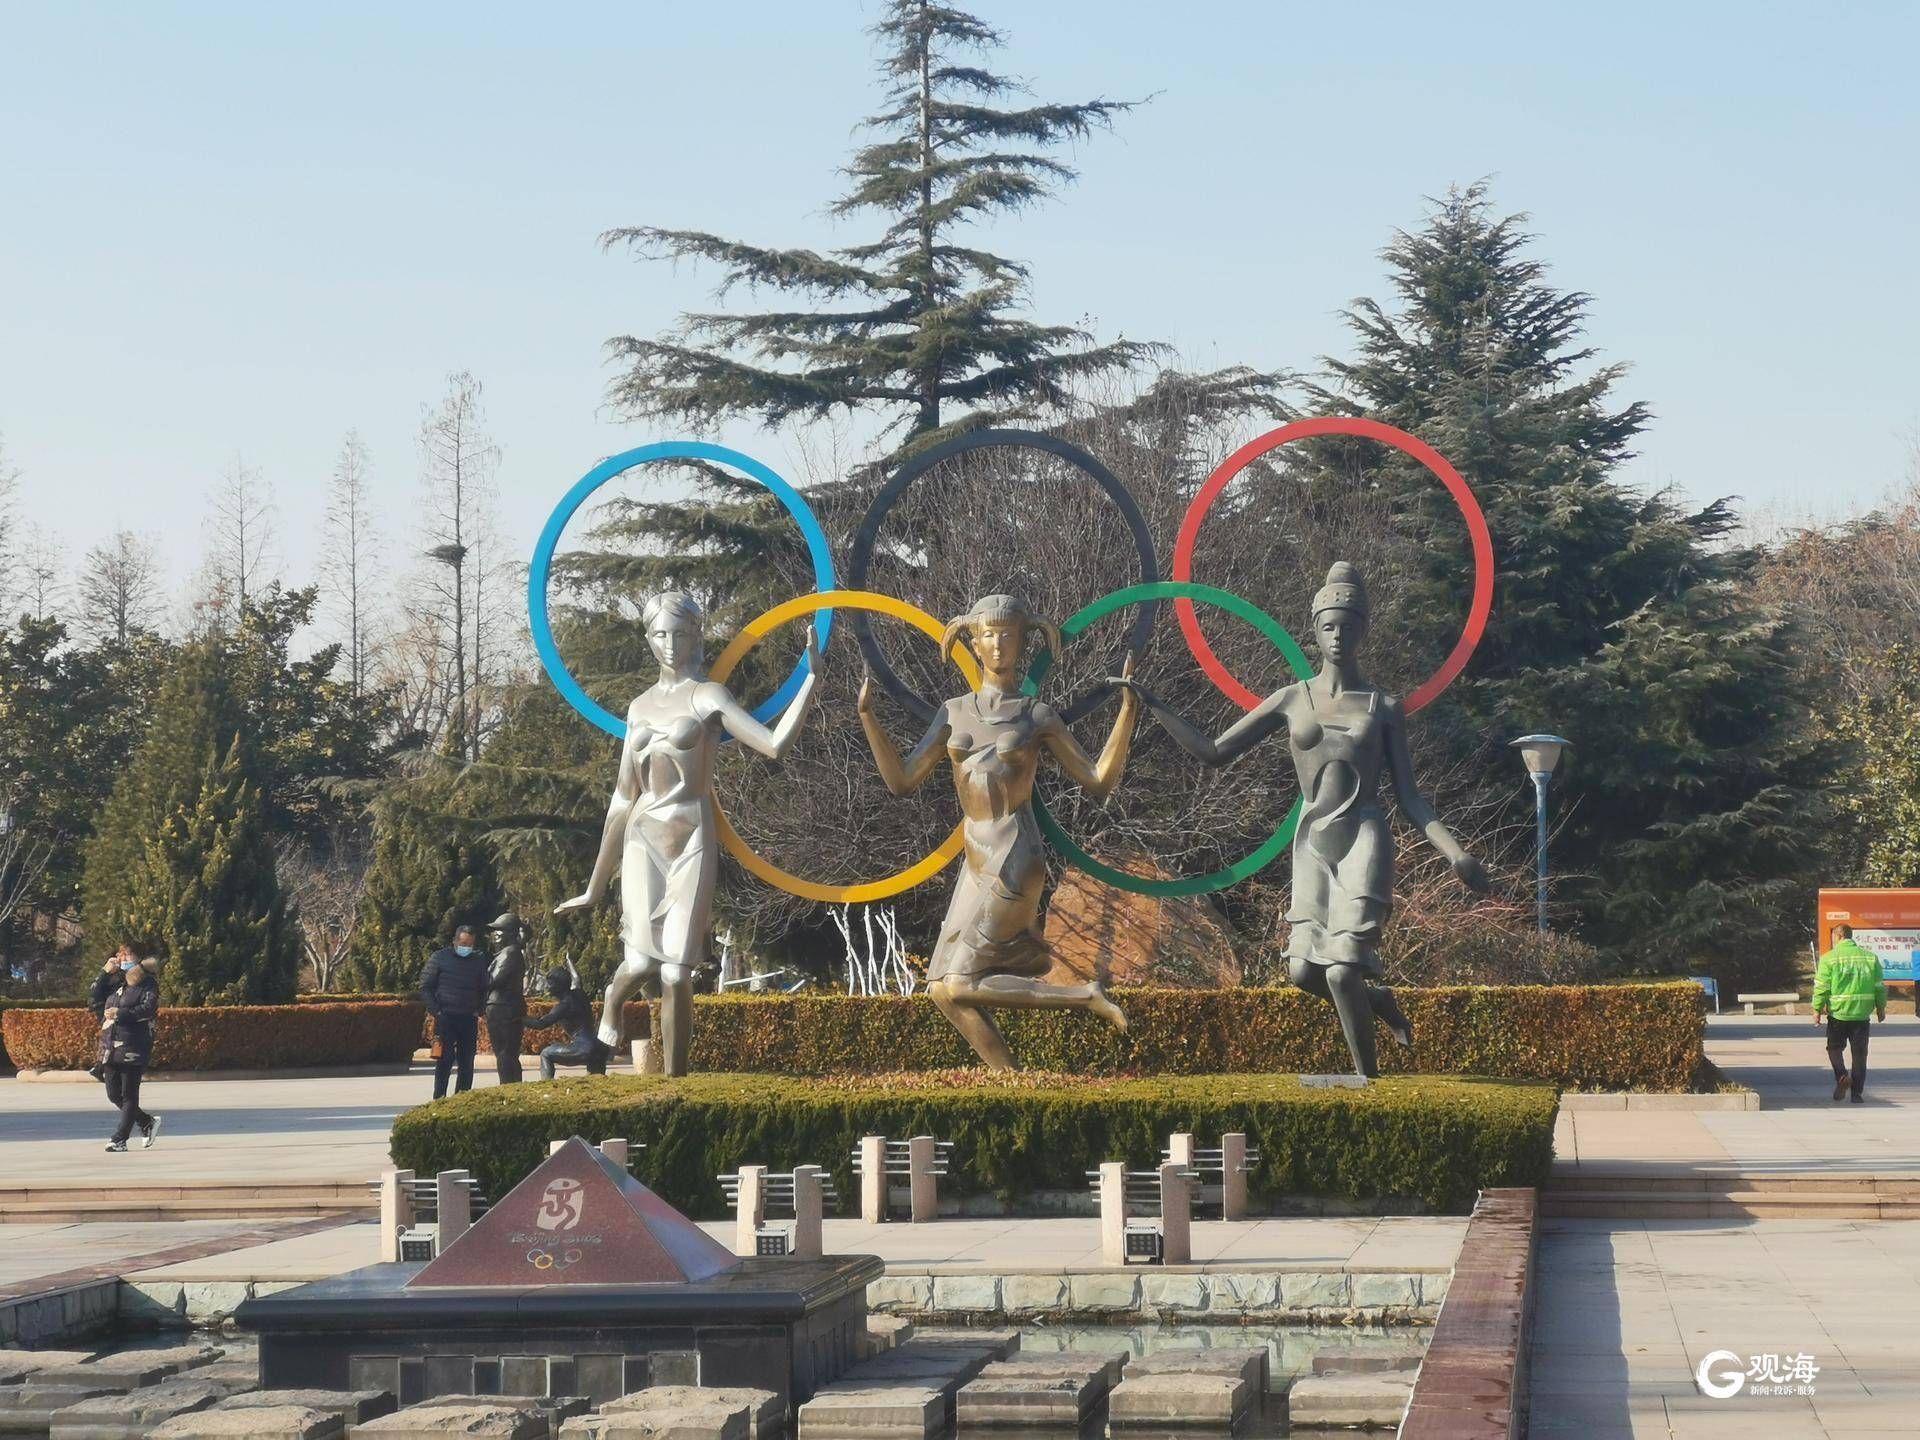 青岛奥林匹克雕塑文化园占地面积43万平方米(645亩),兼具植物观赏